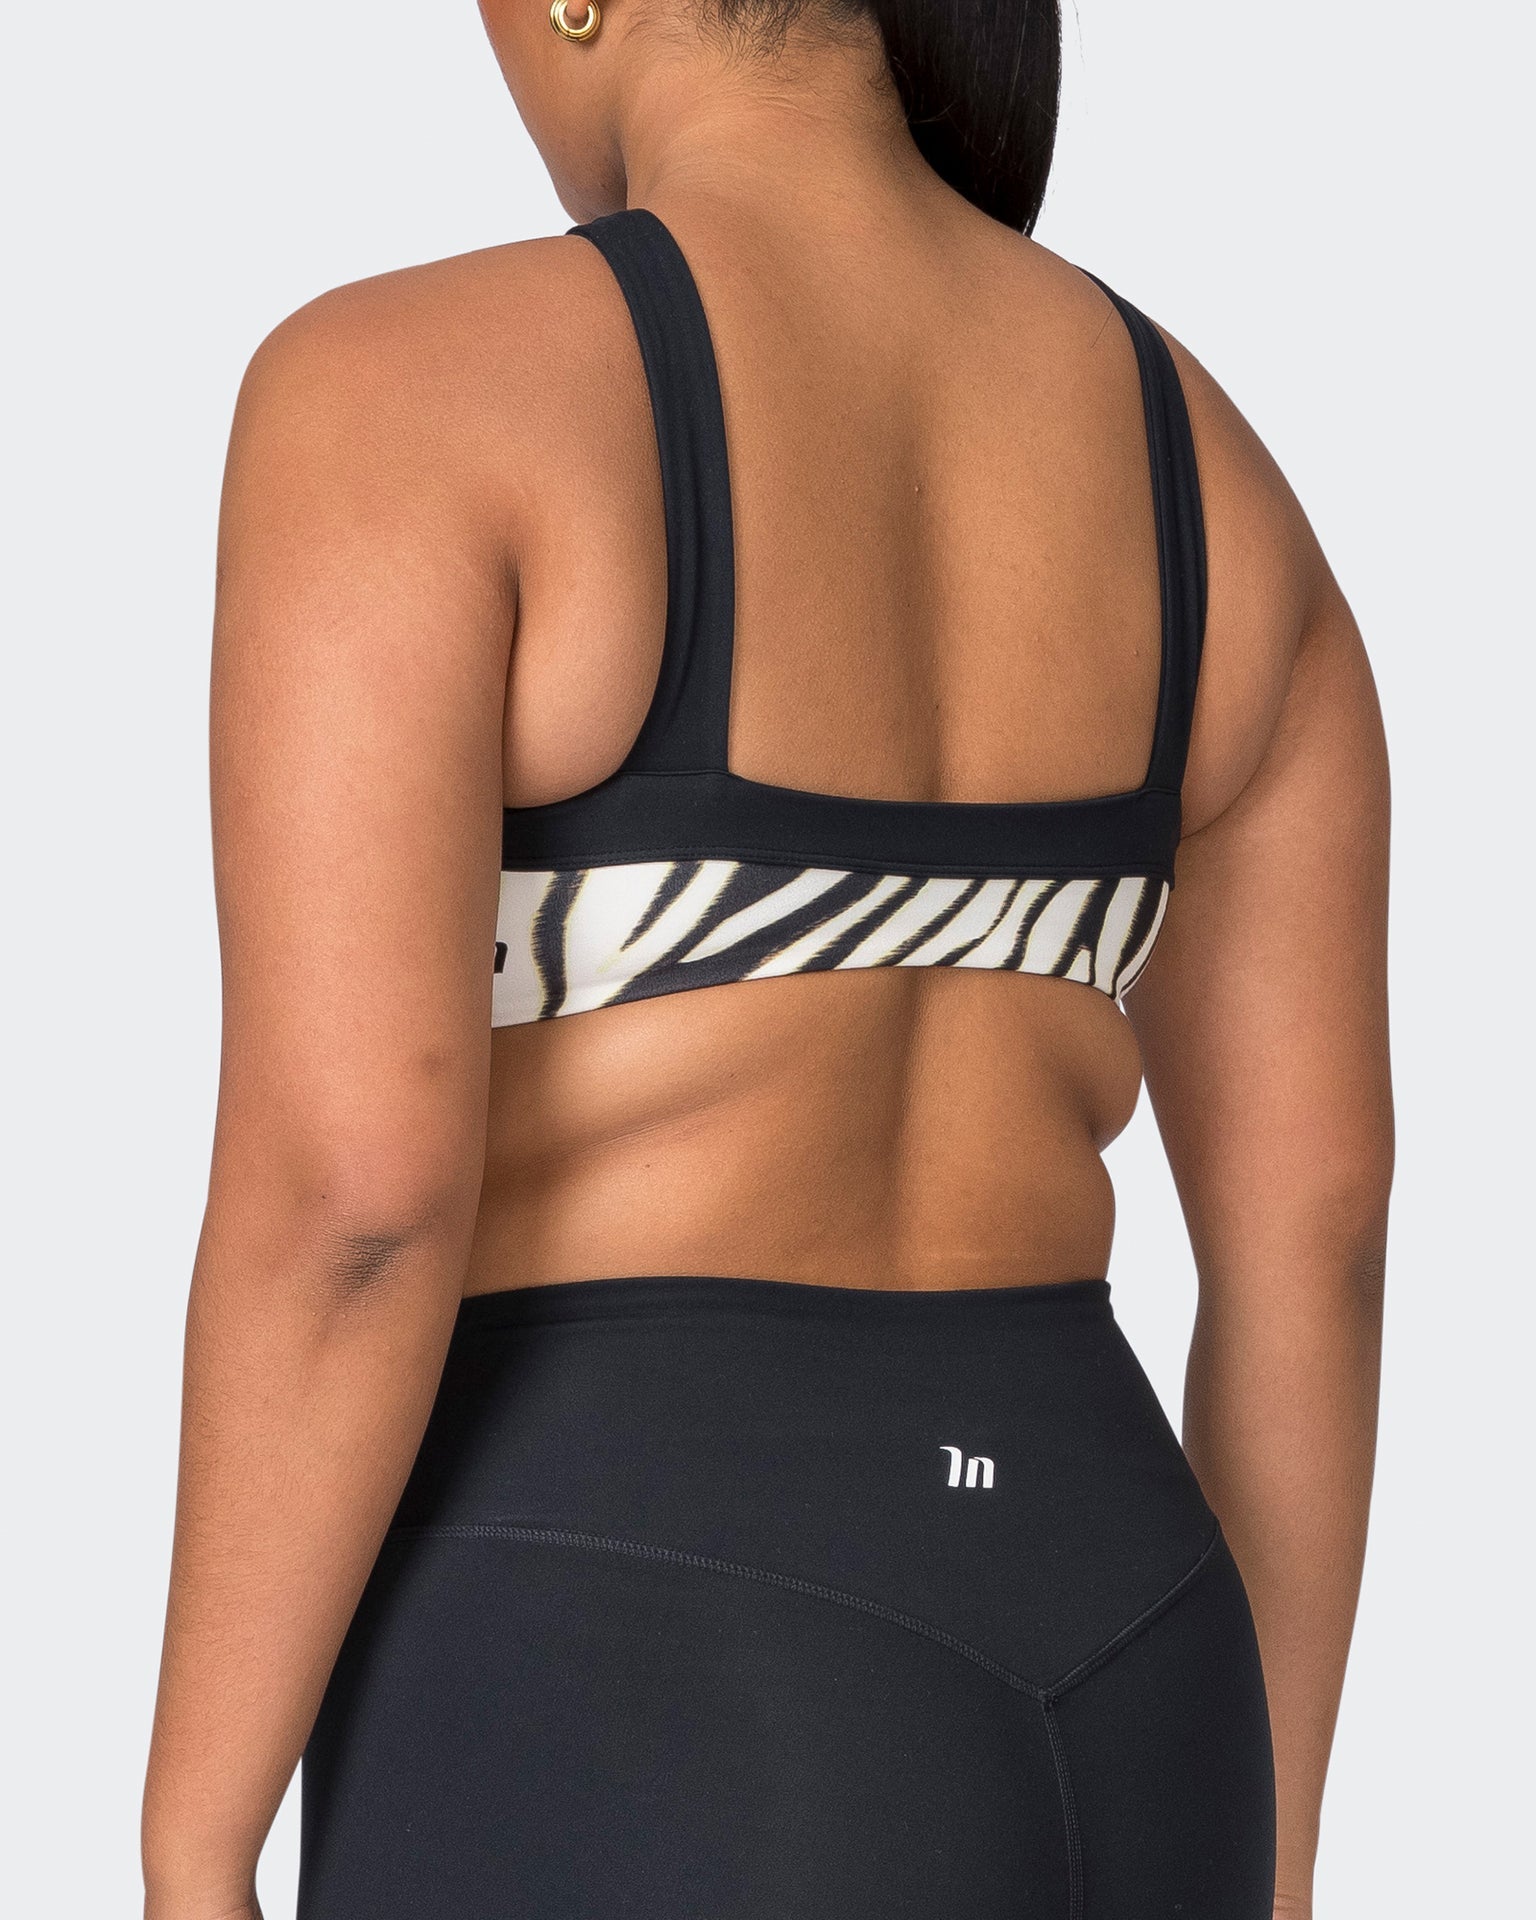 Muscle Nation Sports Bras Luxe Bralette - Zebra Print